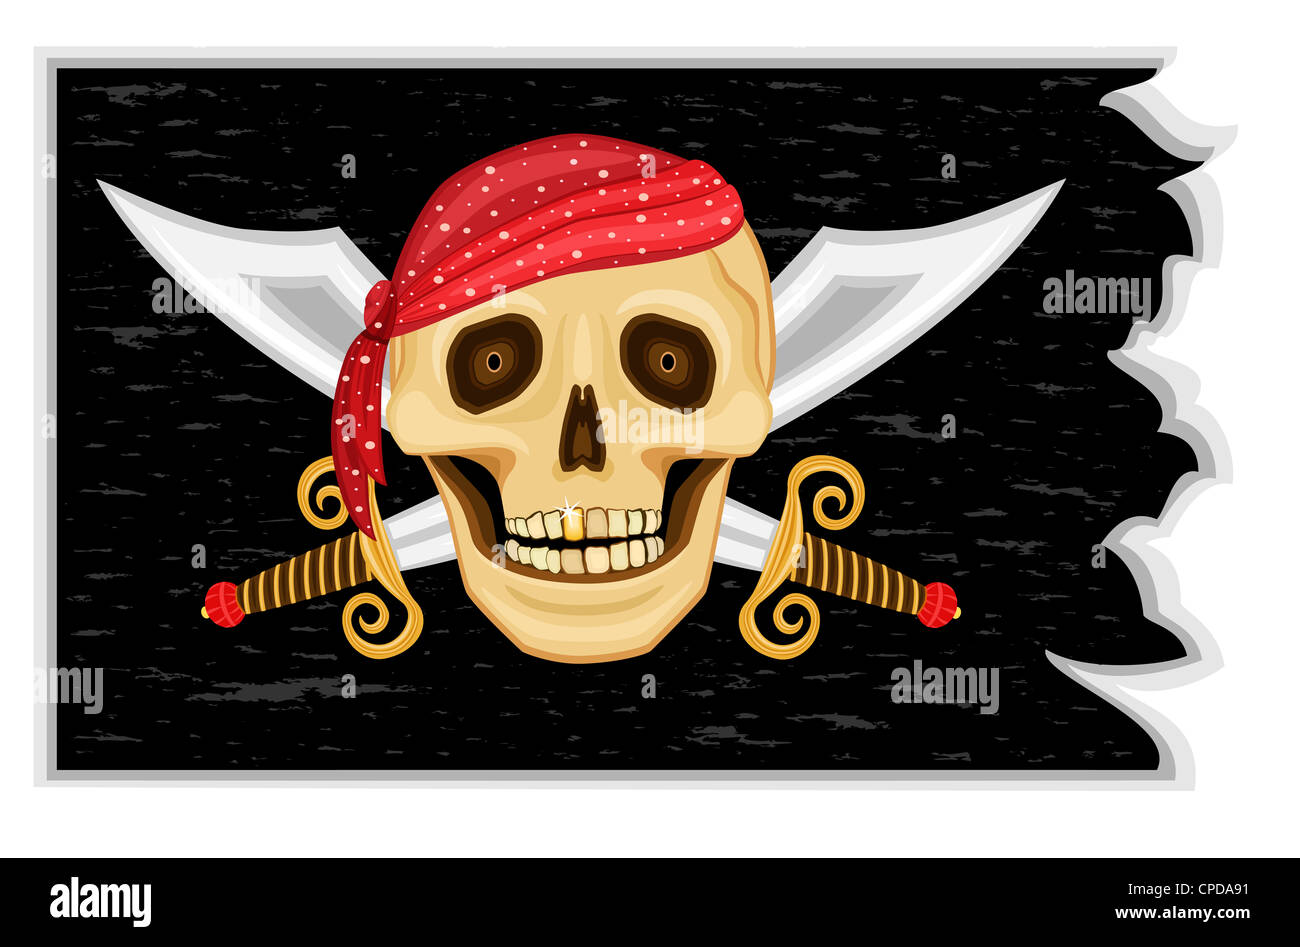 Le Jolly Roger - Pirate drapeau noir avec crâne humain, la dent d'or et épées croisées Banque D'Images